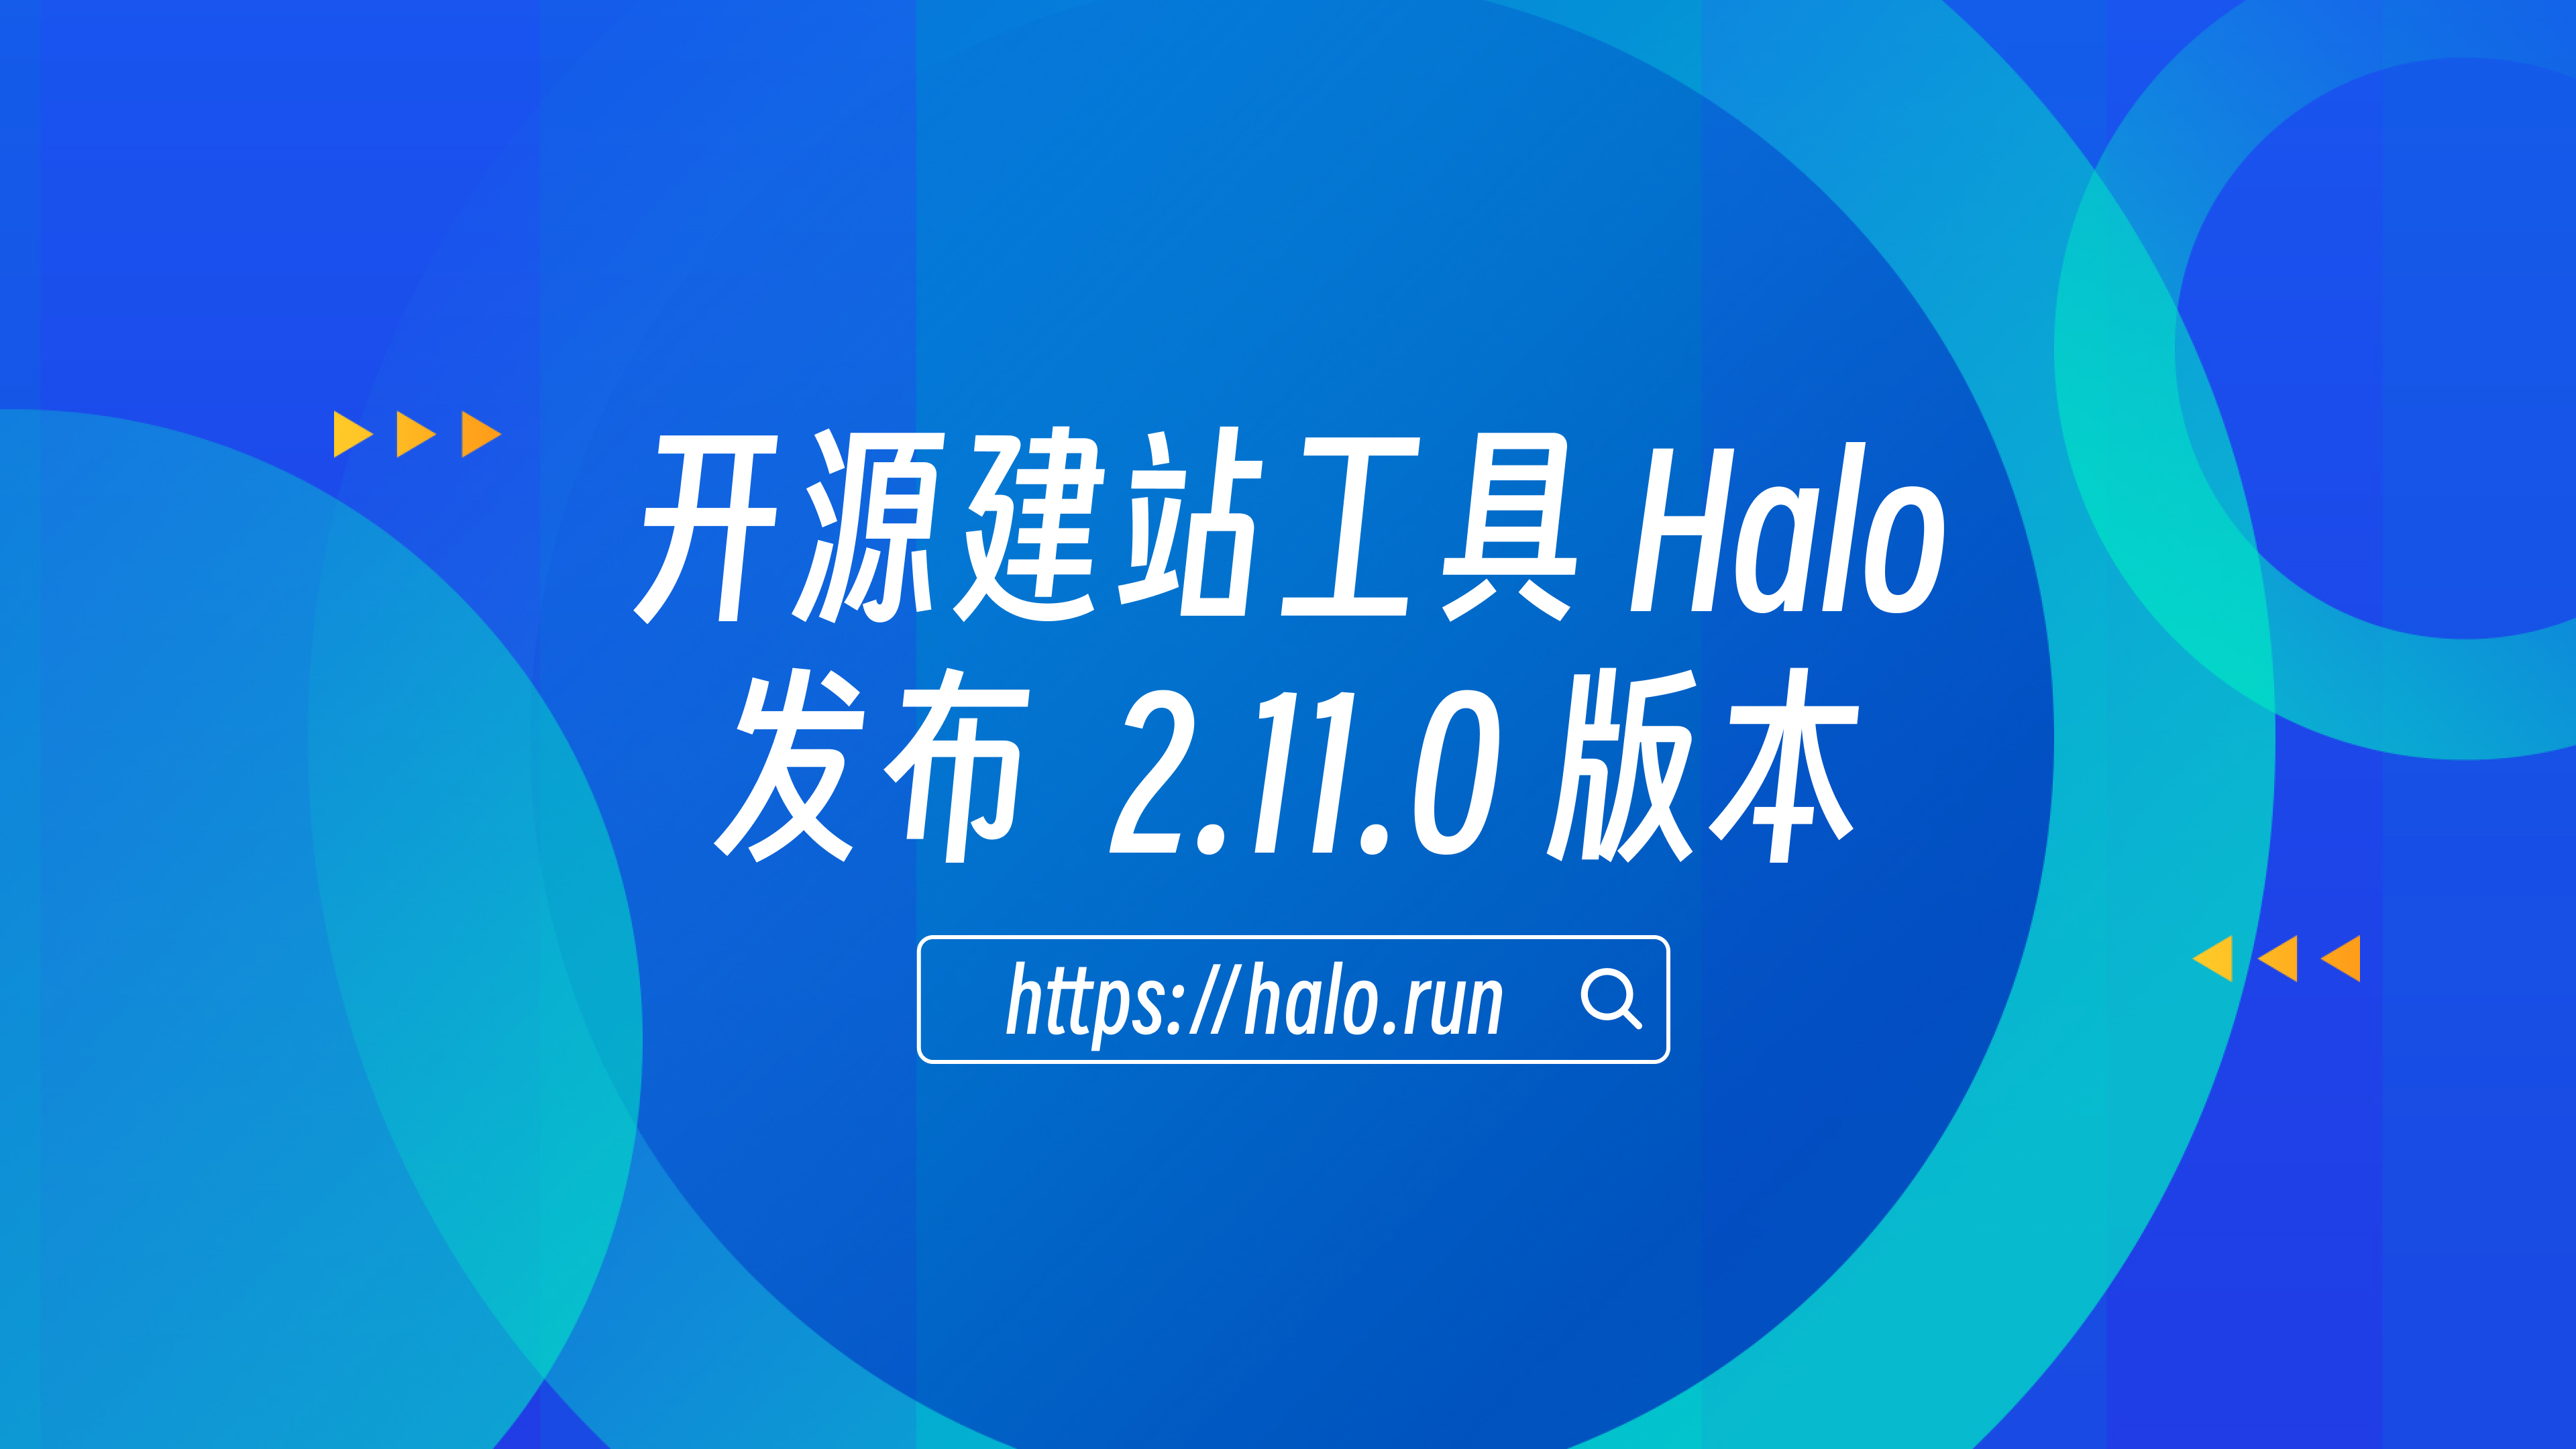 支持个人中心，Halo 2.11.0 发布